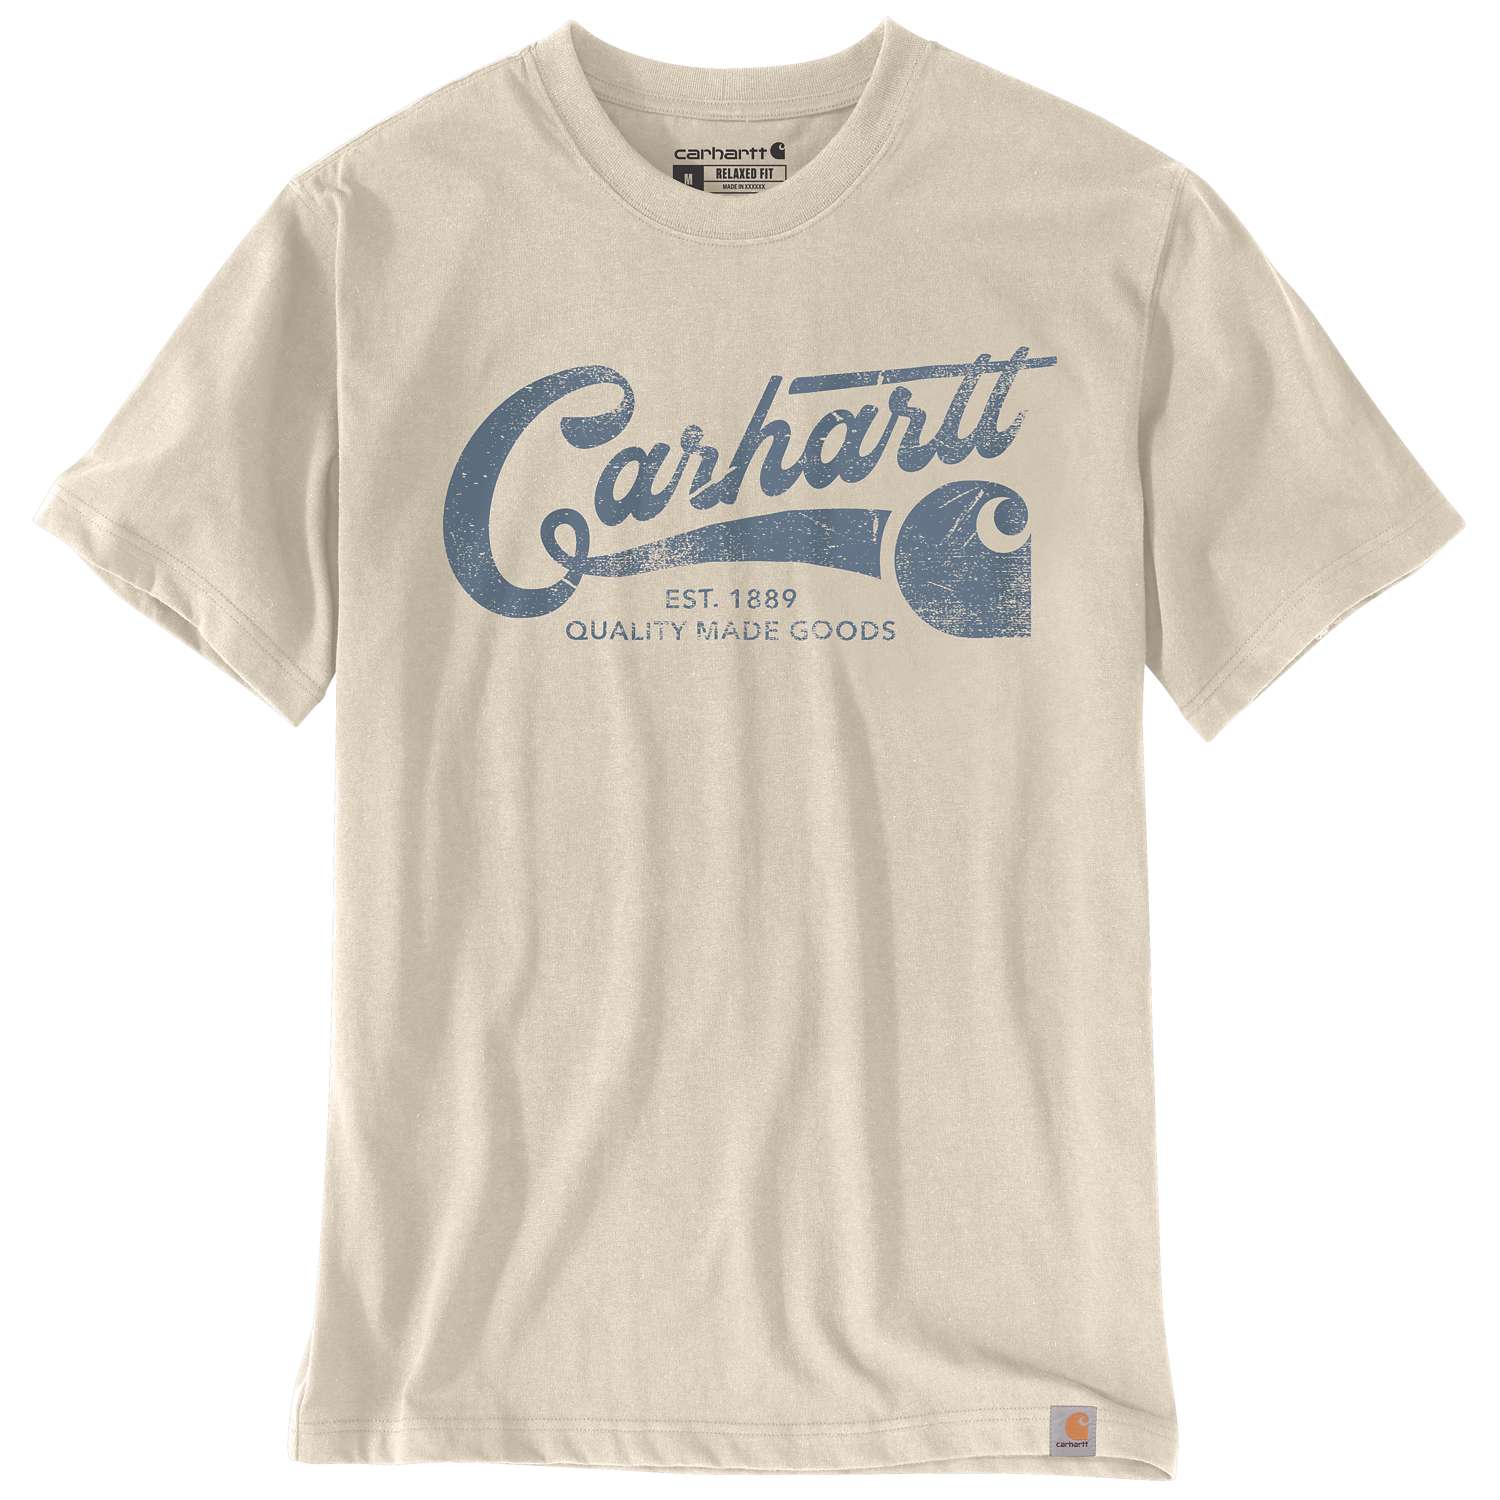 Kurzarm-T-Shirt mit Carhartt Print